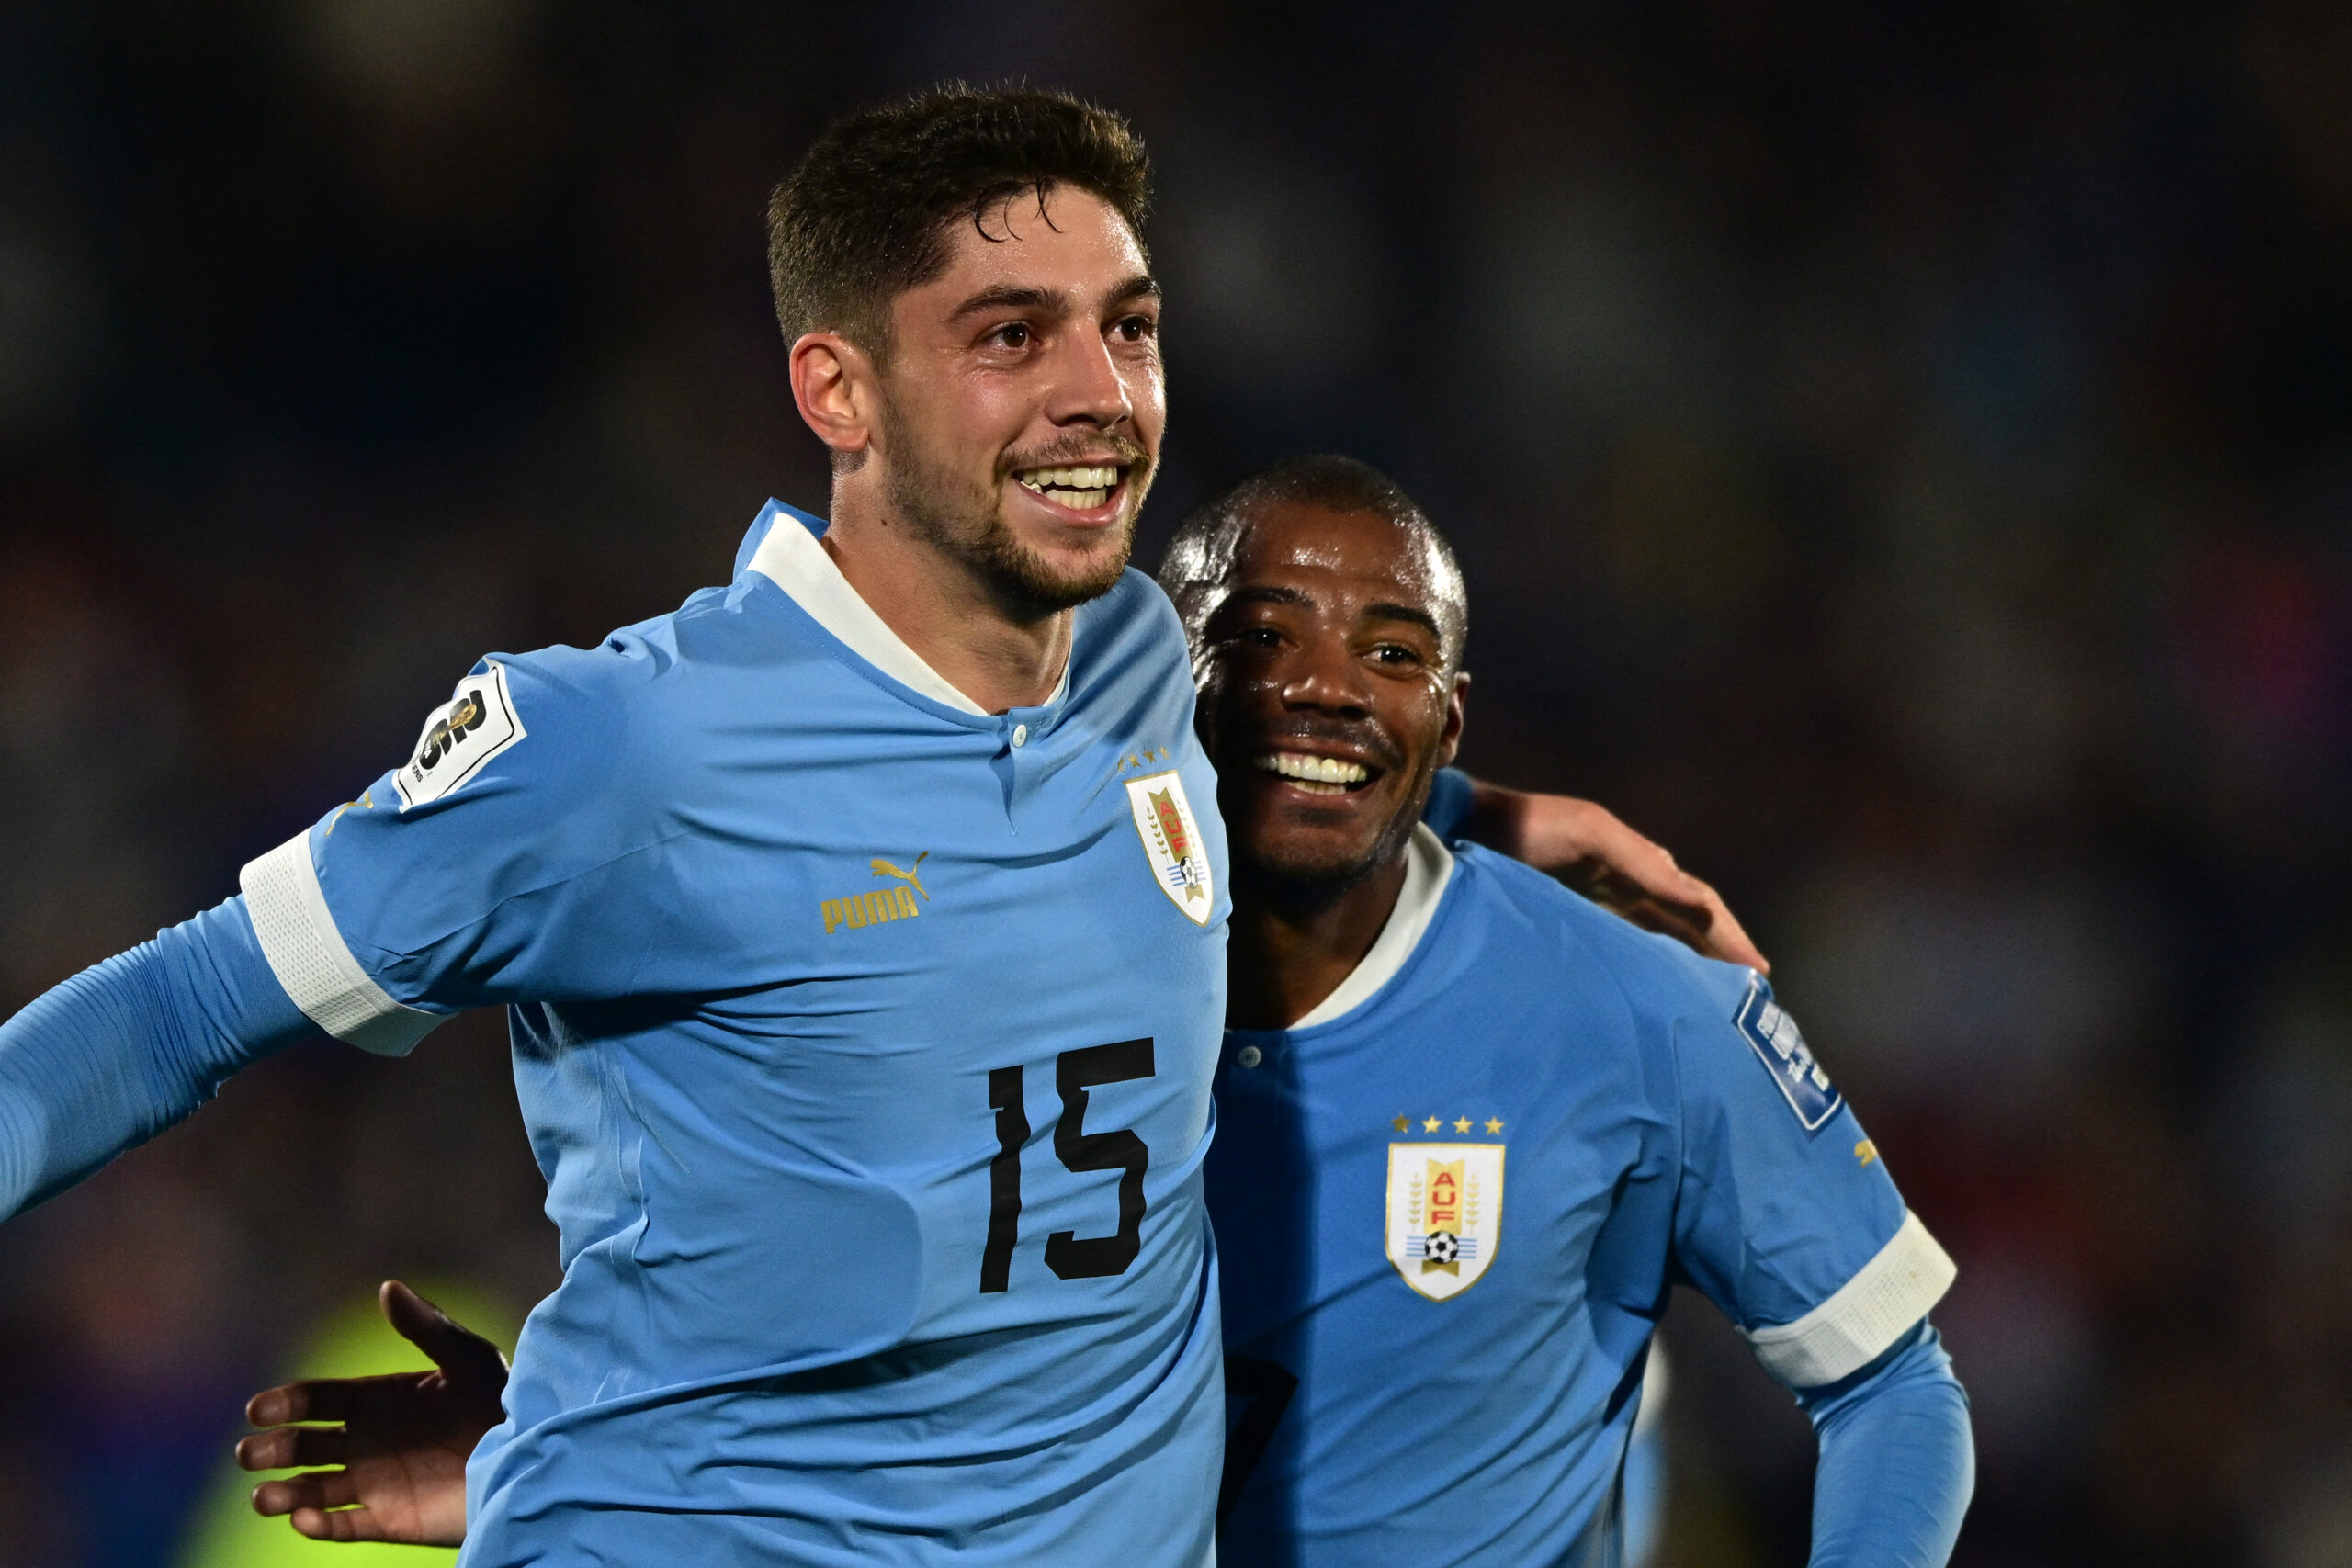 Uruguay ganó 3 a 1 a Chile en el debut oficial de Bielsa